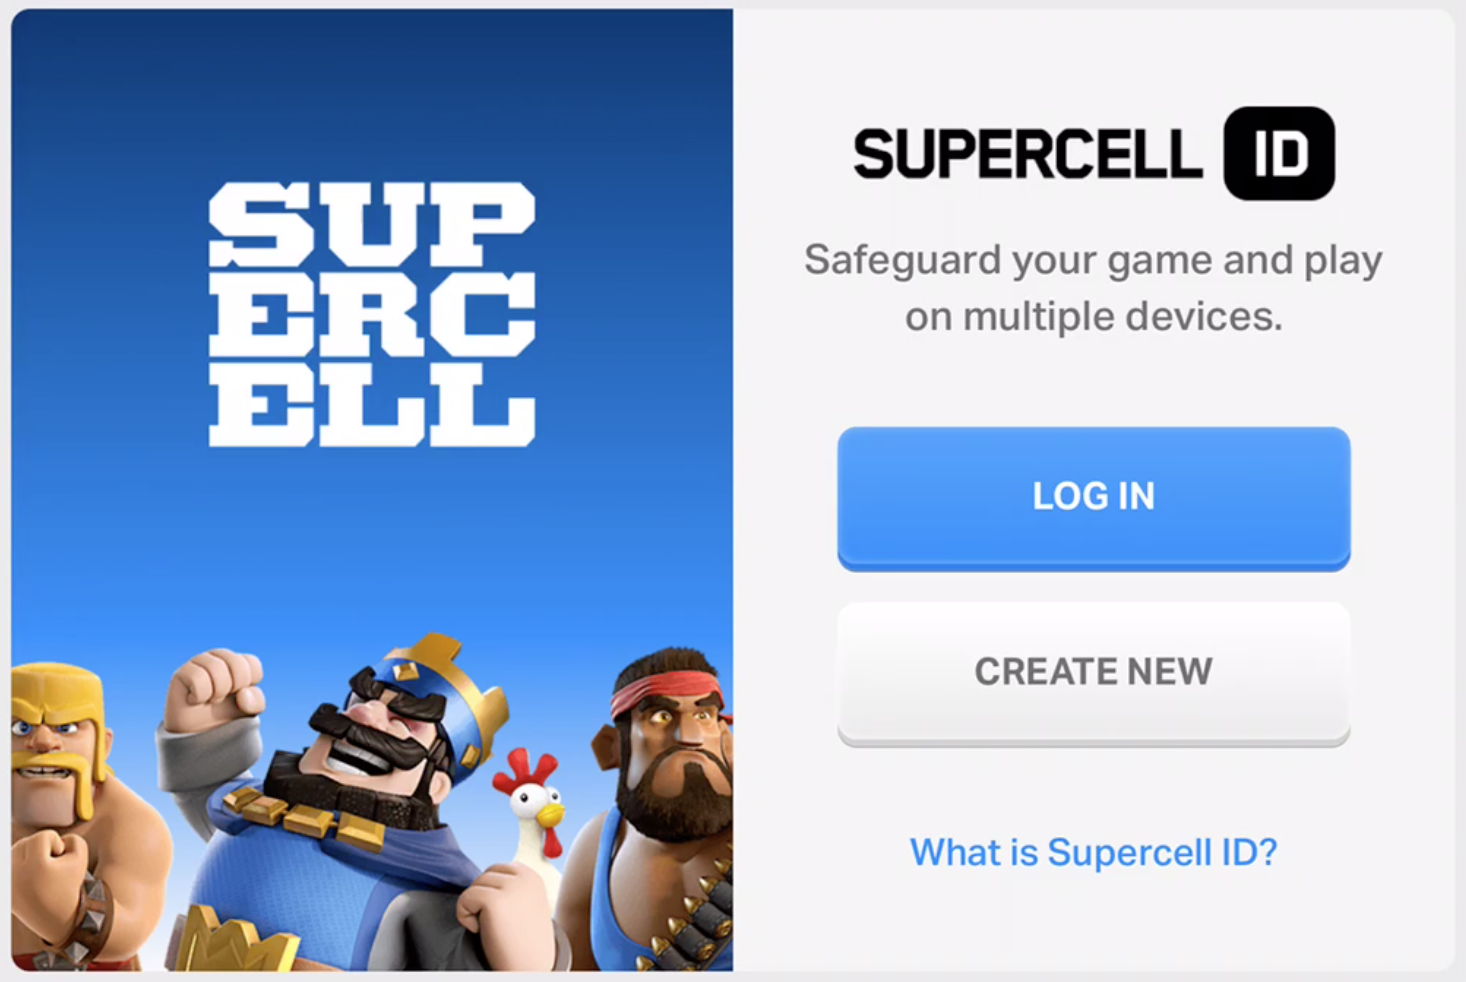 Суперселл ID. Картинки Supercell. Игры Supercell ID. Значок Supercell ID. Войти в суперселл айди